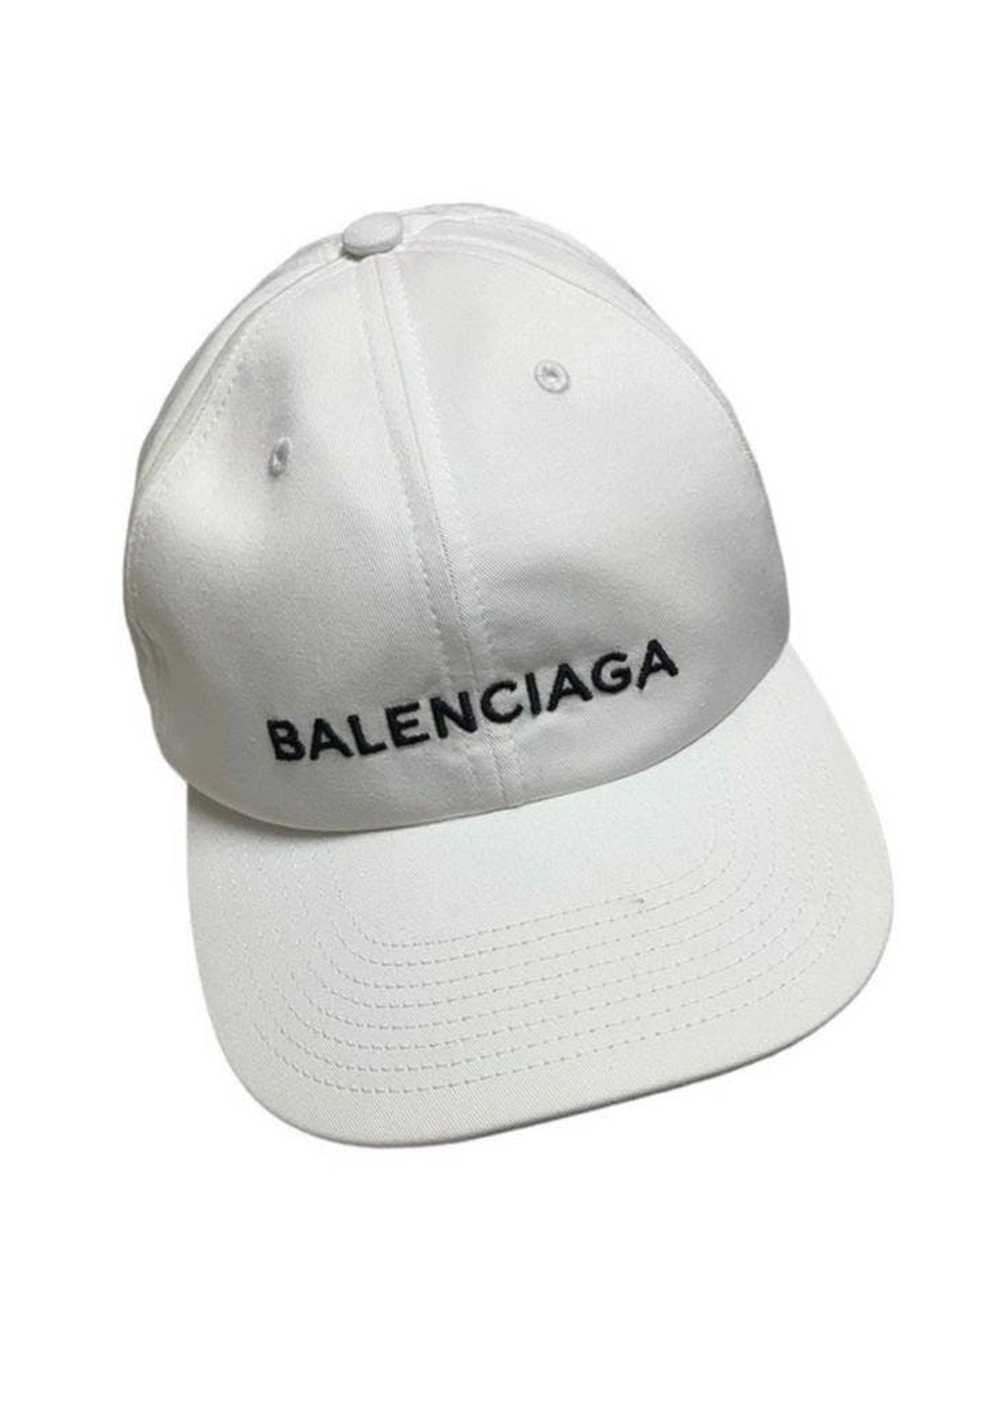 Balenciaga Balenciaga baseball hat big logo embro… - image 2